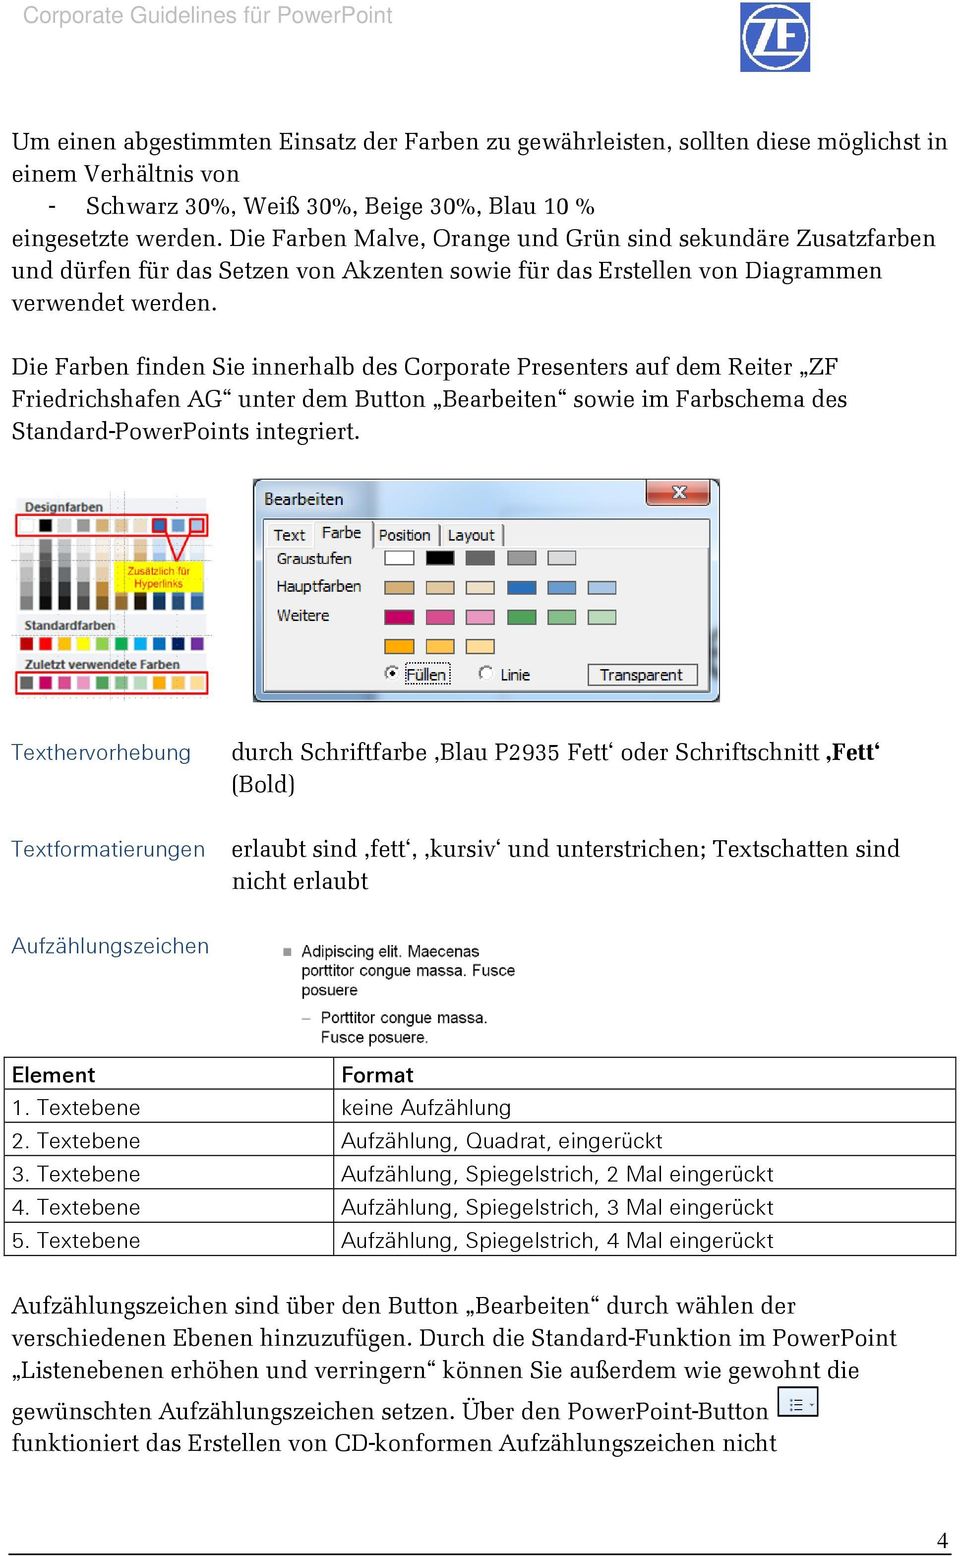 Die Farben finden Sie innerhalb des Corporate Presenters auf dem Reiter ZF Friedrichshafen AG unter dem Button Bearbeiten sowie im Farbschema des Standard-PowerPoints integriert.